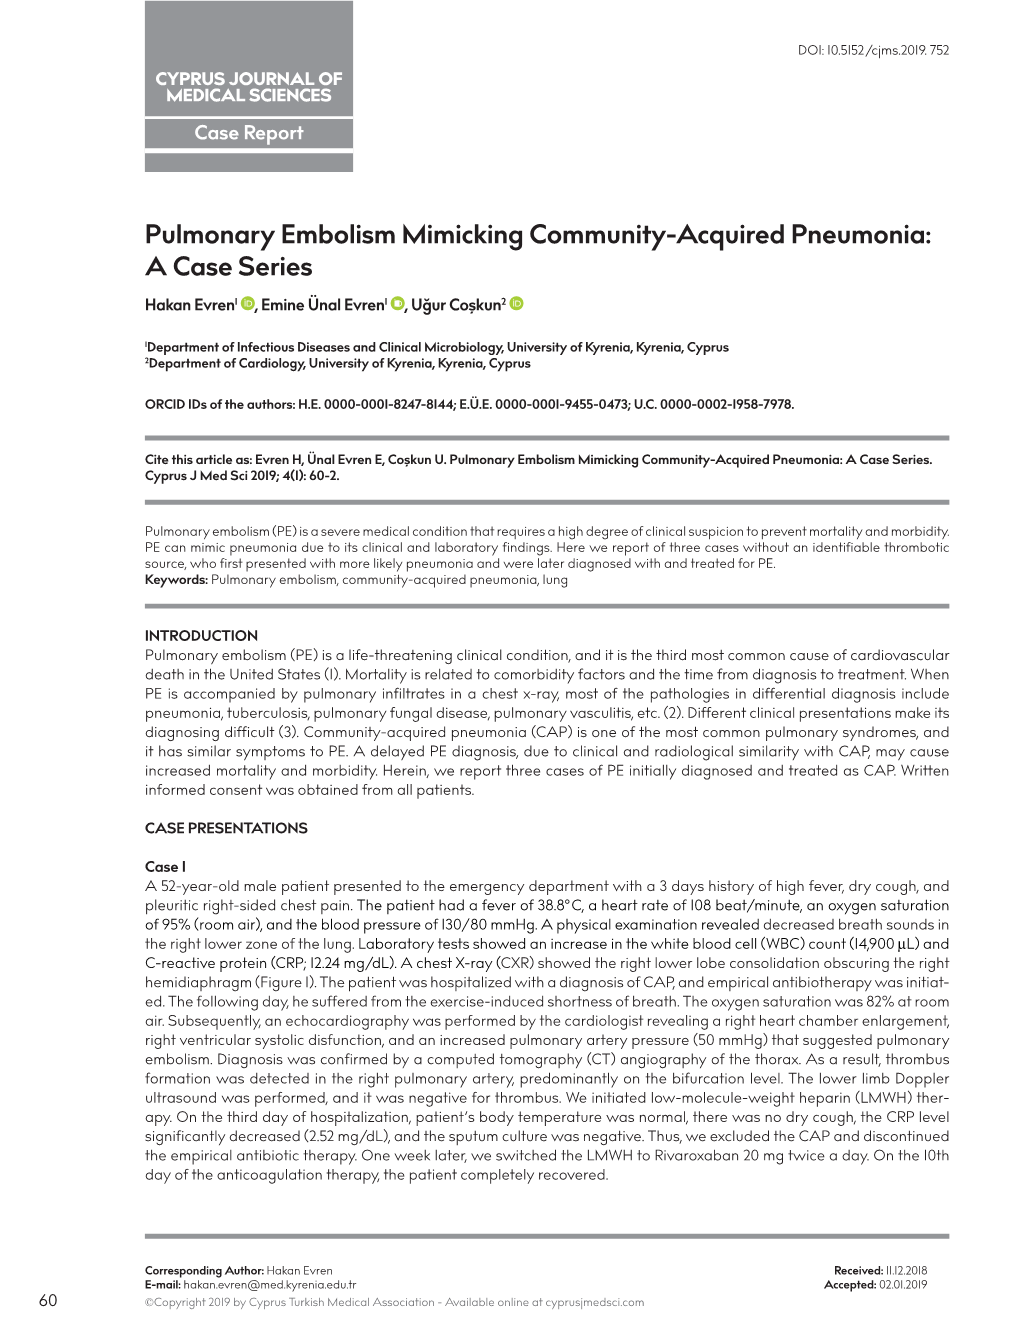 Pulmonary Embolism Mimicking Community-Acquired Pneumonia: a Case Series Hakan Evren1 , Emine Ünal Evren1 , Uğur Coşkun2